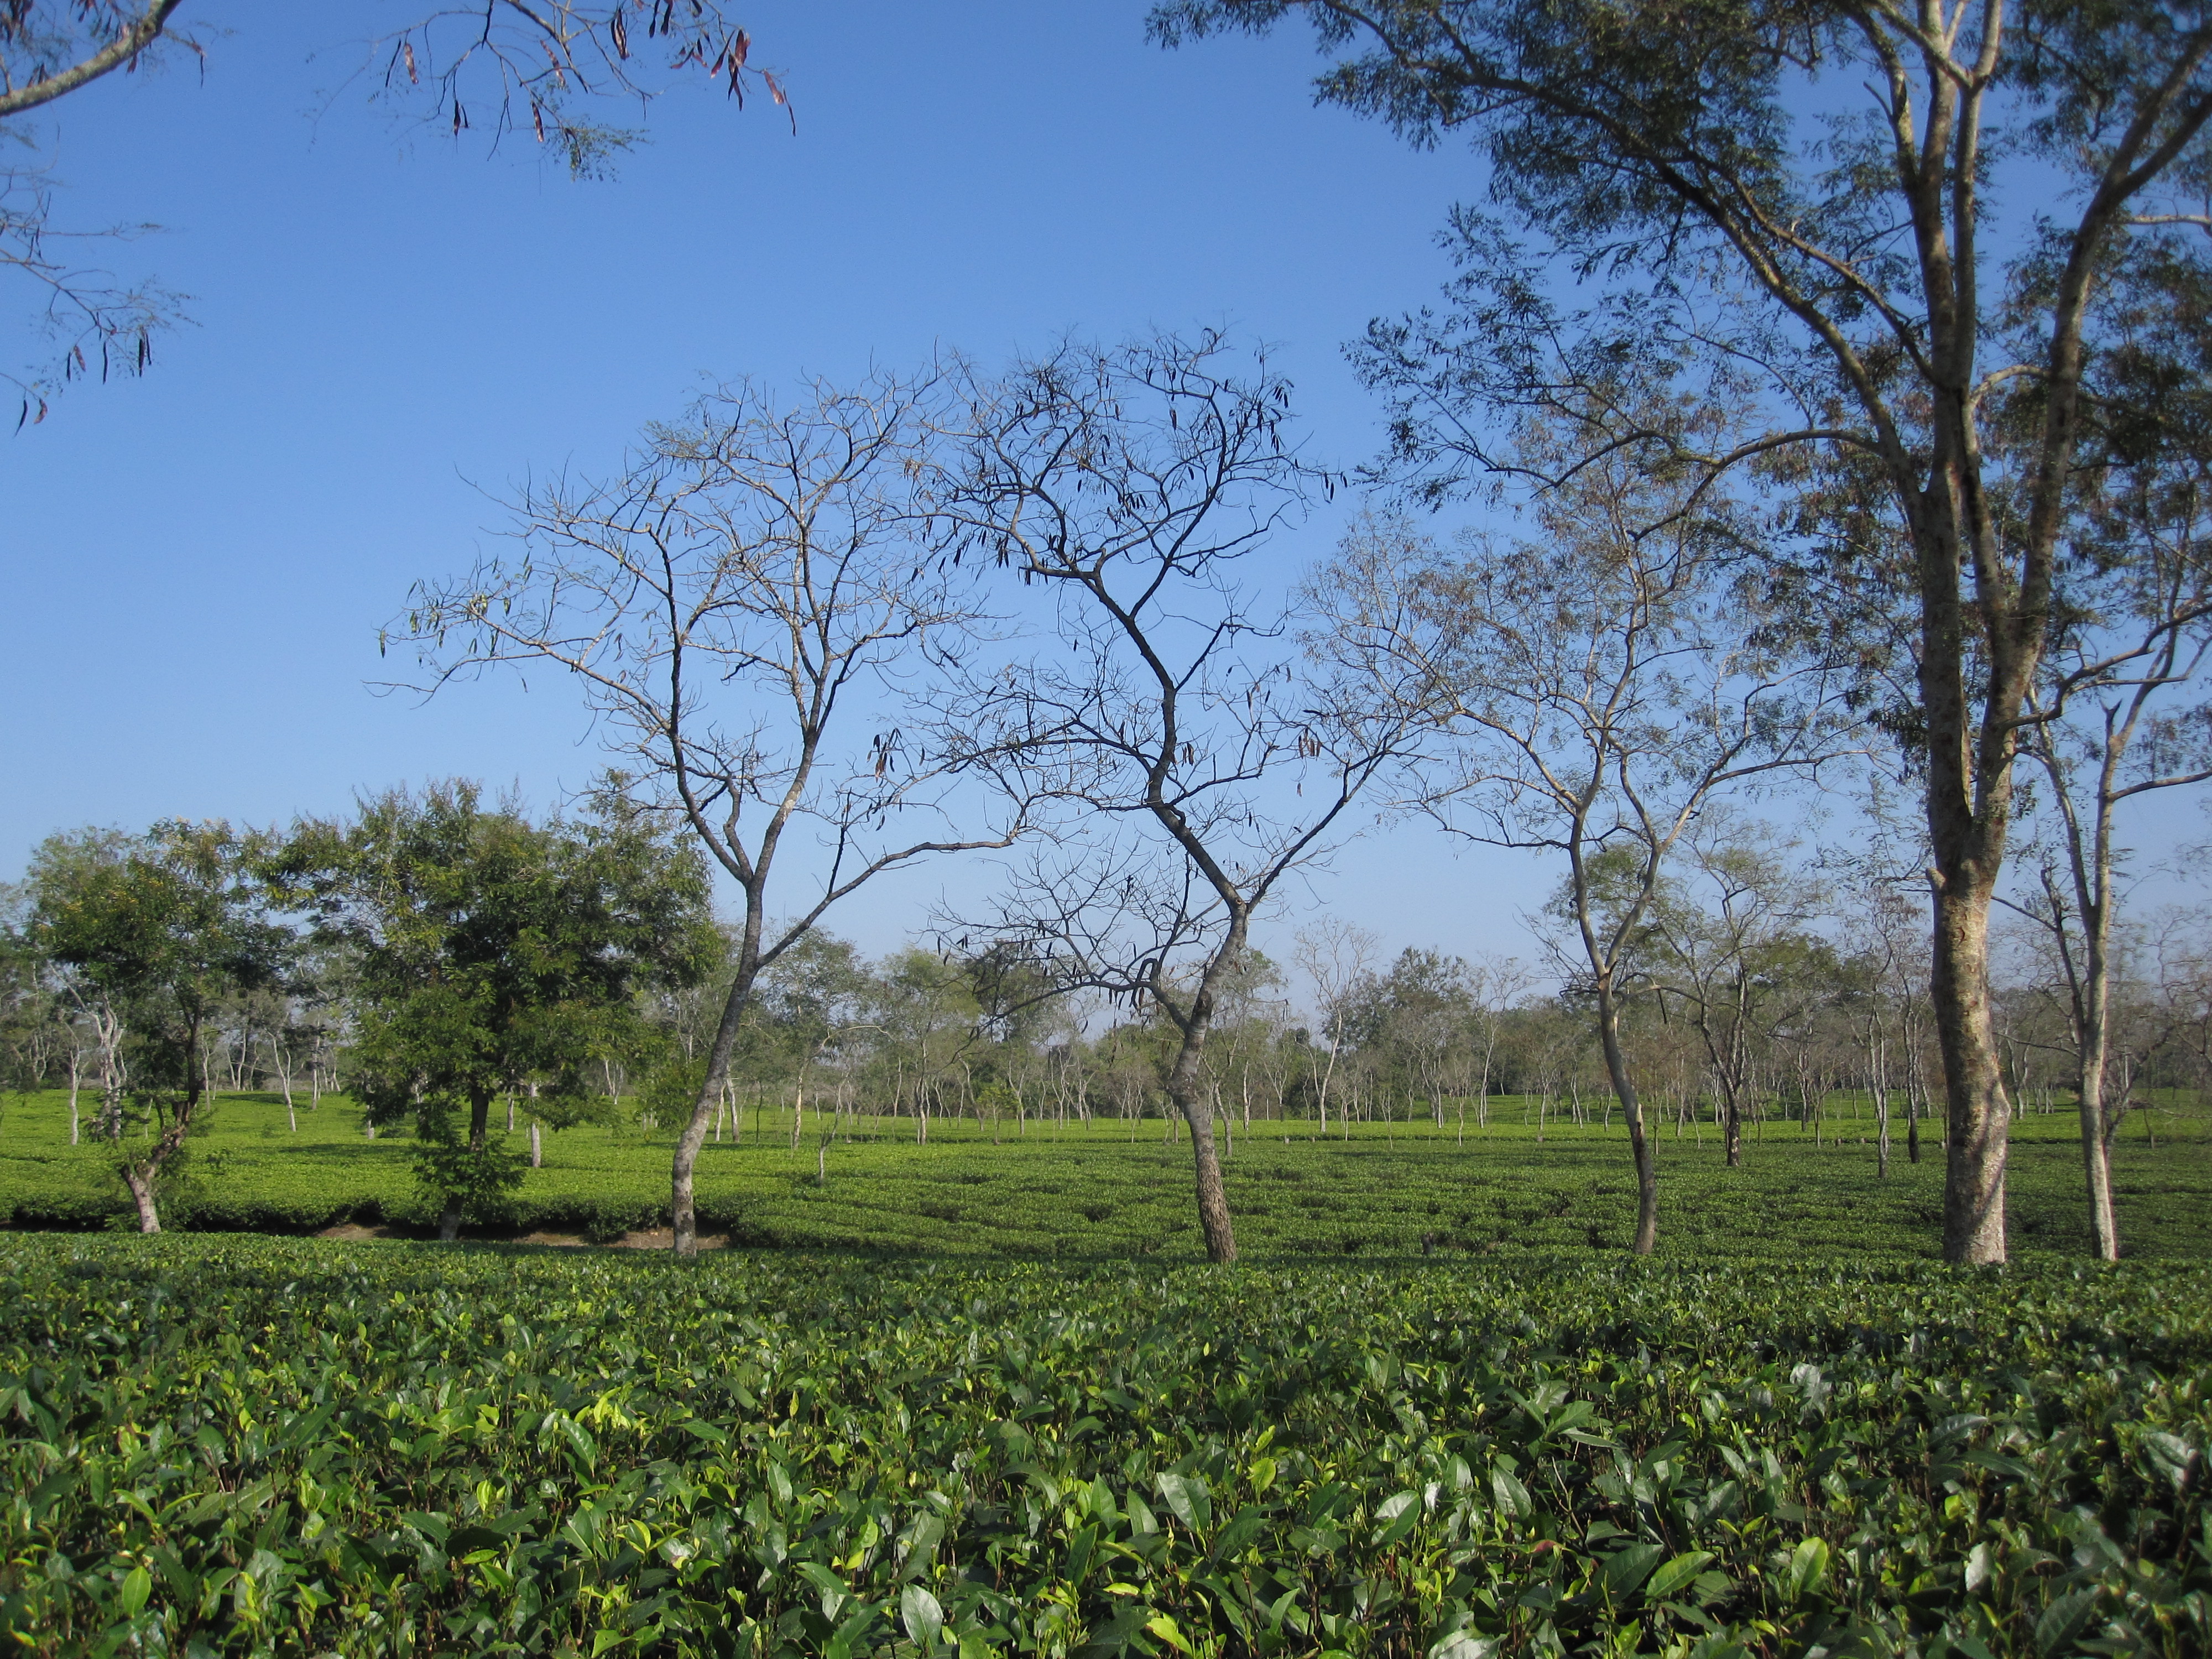 Tea crops